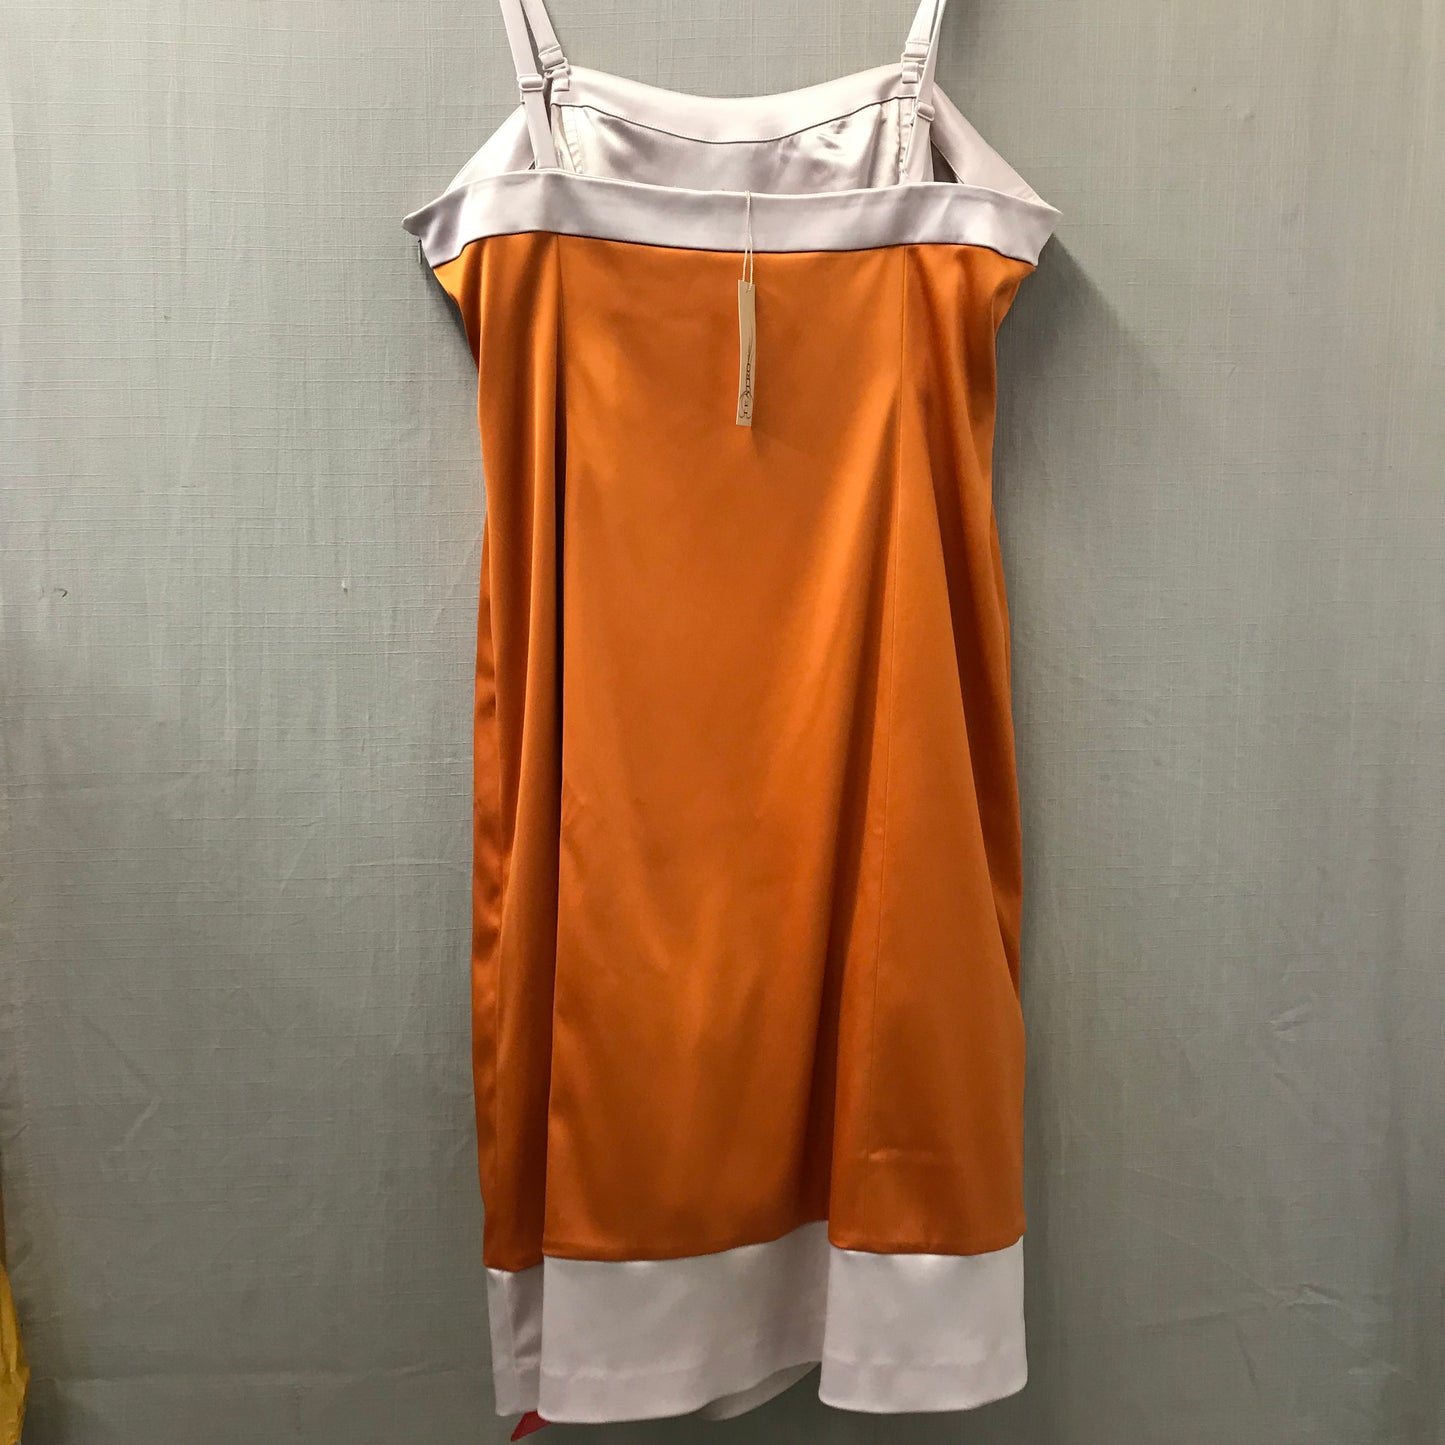 Teatro Orange Formal Strappy Dress Size 20 BNWT